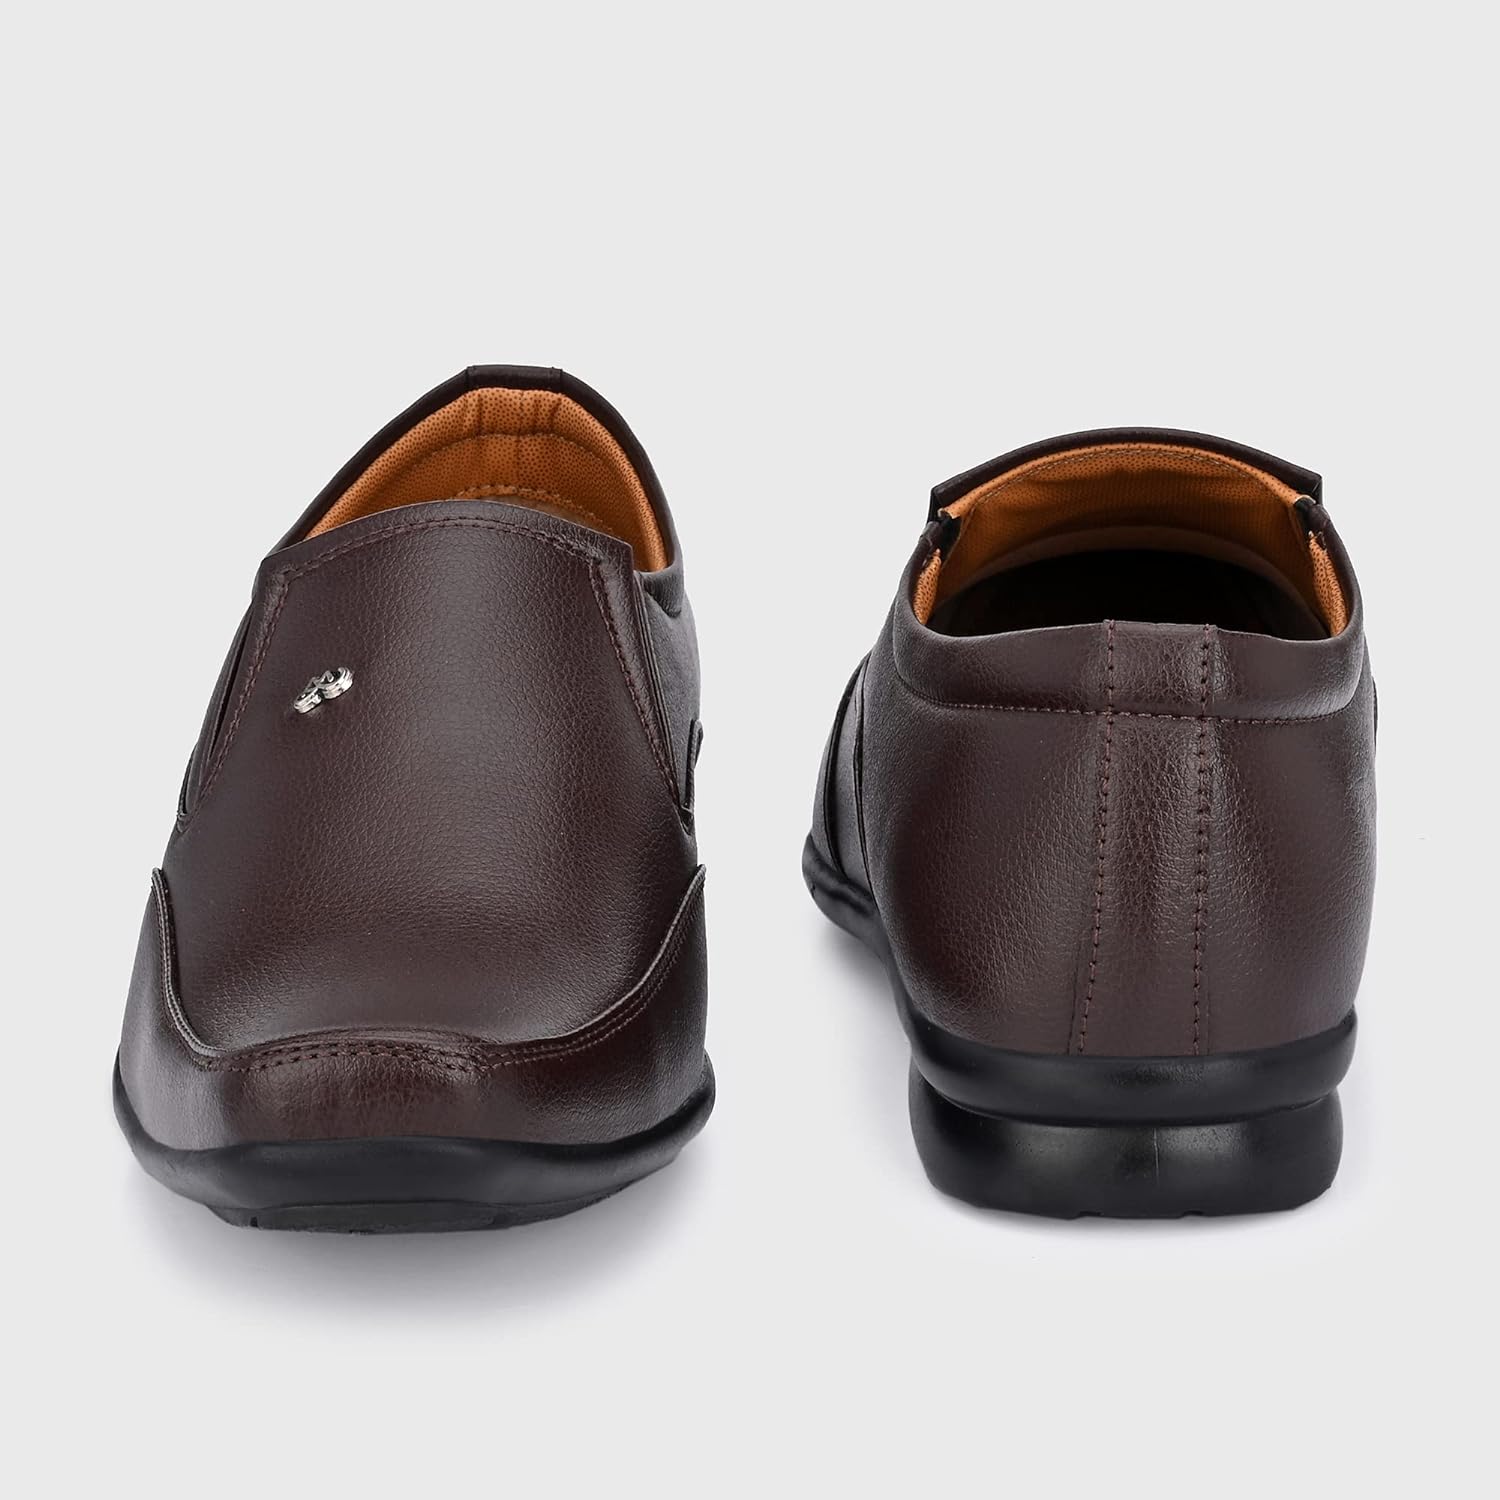 Centrino Men's Formal Shoe